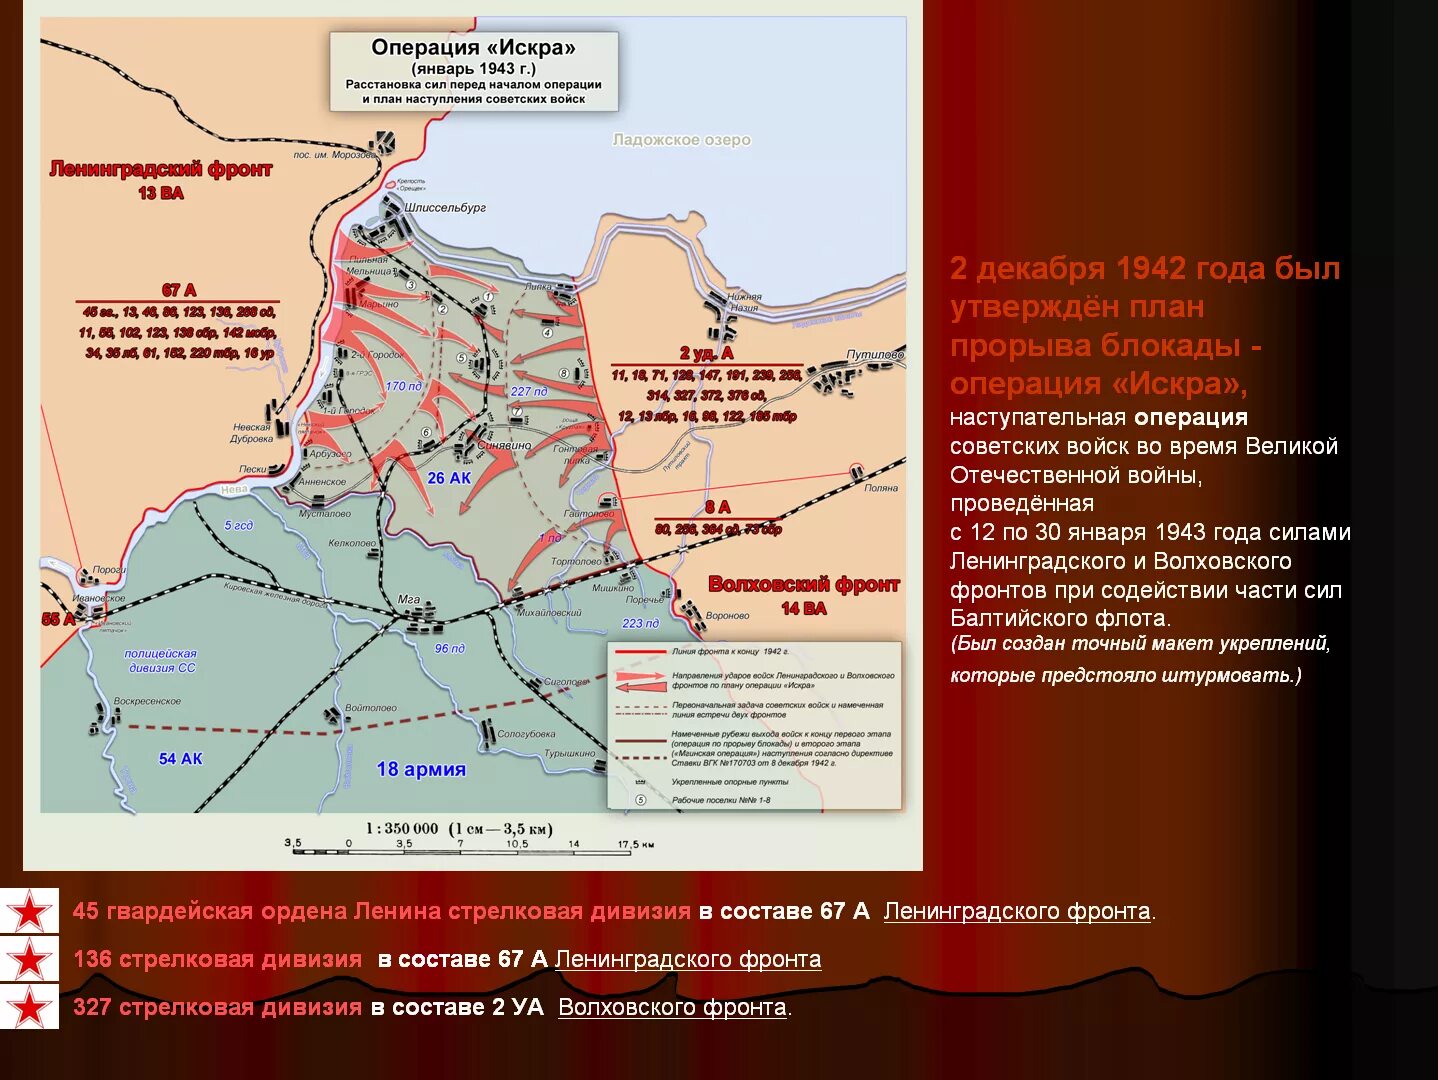 Полное снятие блокады операция. Прорыв блокады Ленинграда (12–30 января 1943). Карта прорыва блокады Ленинграда в 1943 году.